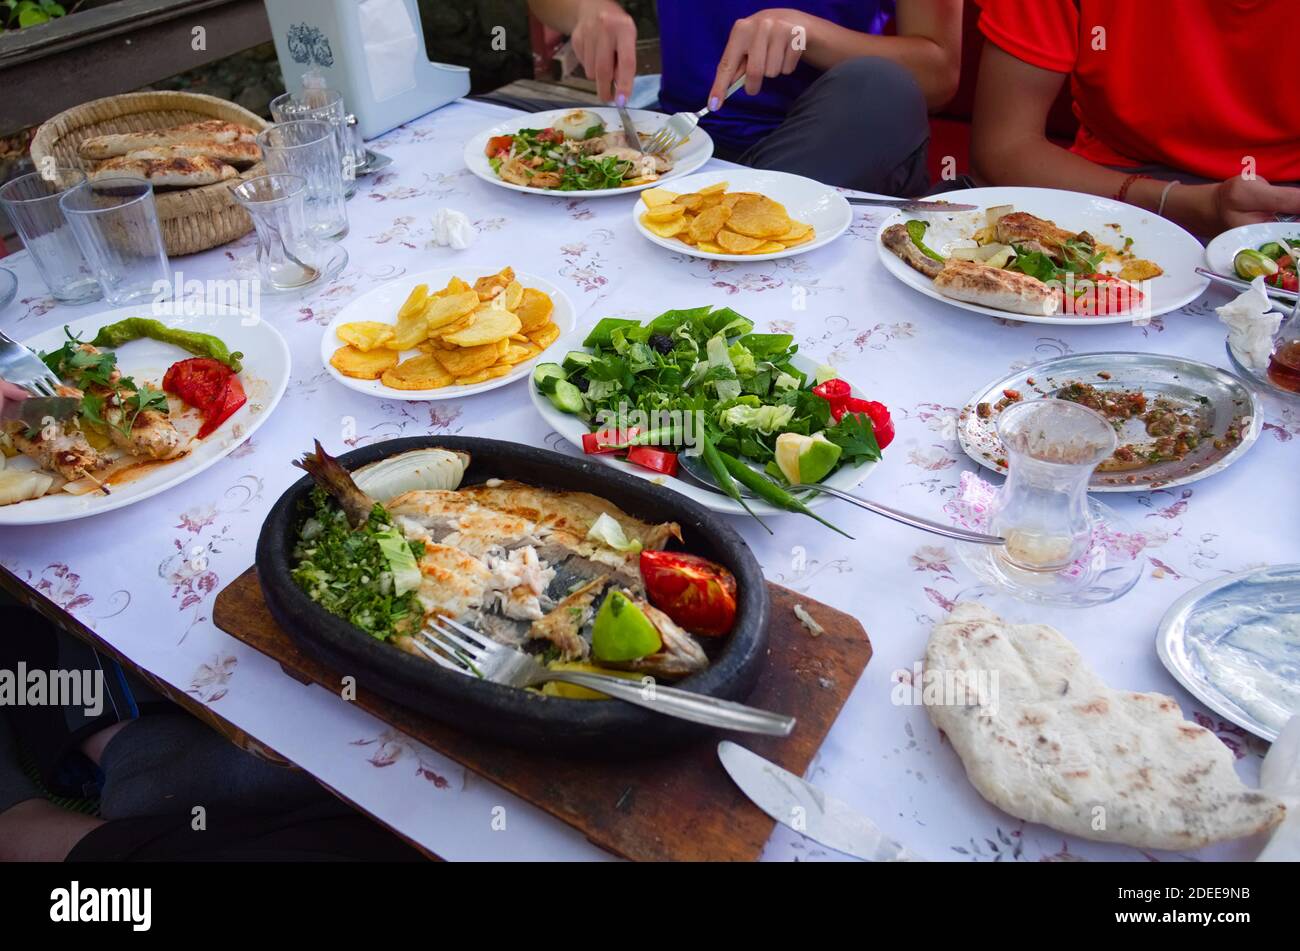 Teller mit verschiedenen türkischen Speisen in einem Restaurant in einem kleinen Dorf in den Bergen. Große Auswahl an traditioneller lokaler Küche auf dem Tisch. Stockfoto